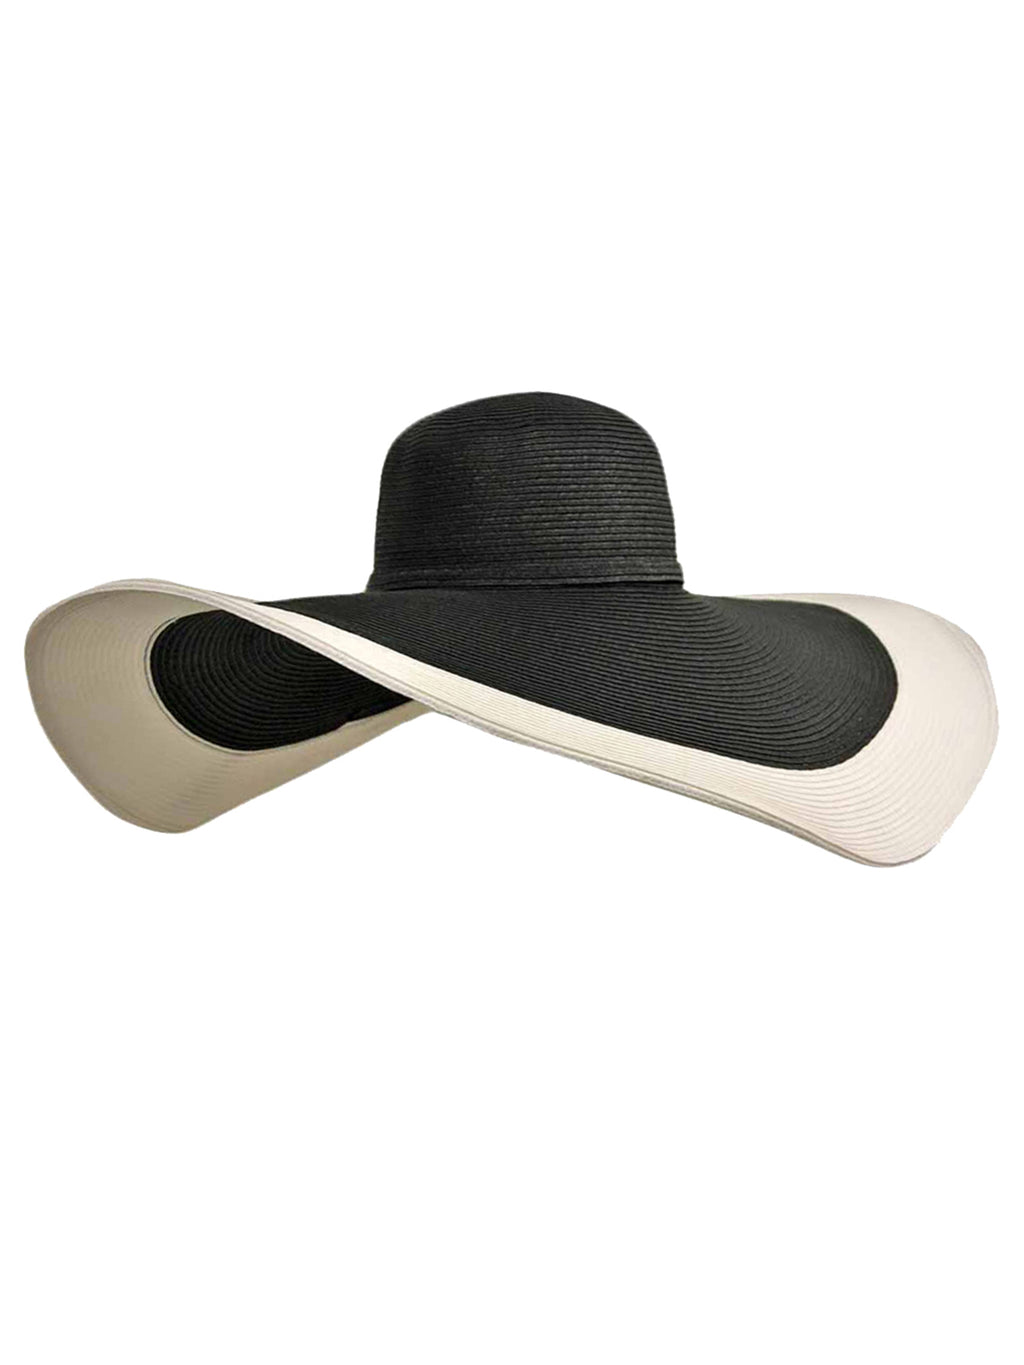 Black & White Floppy Hat With Wide Brim